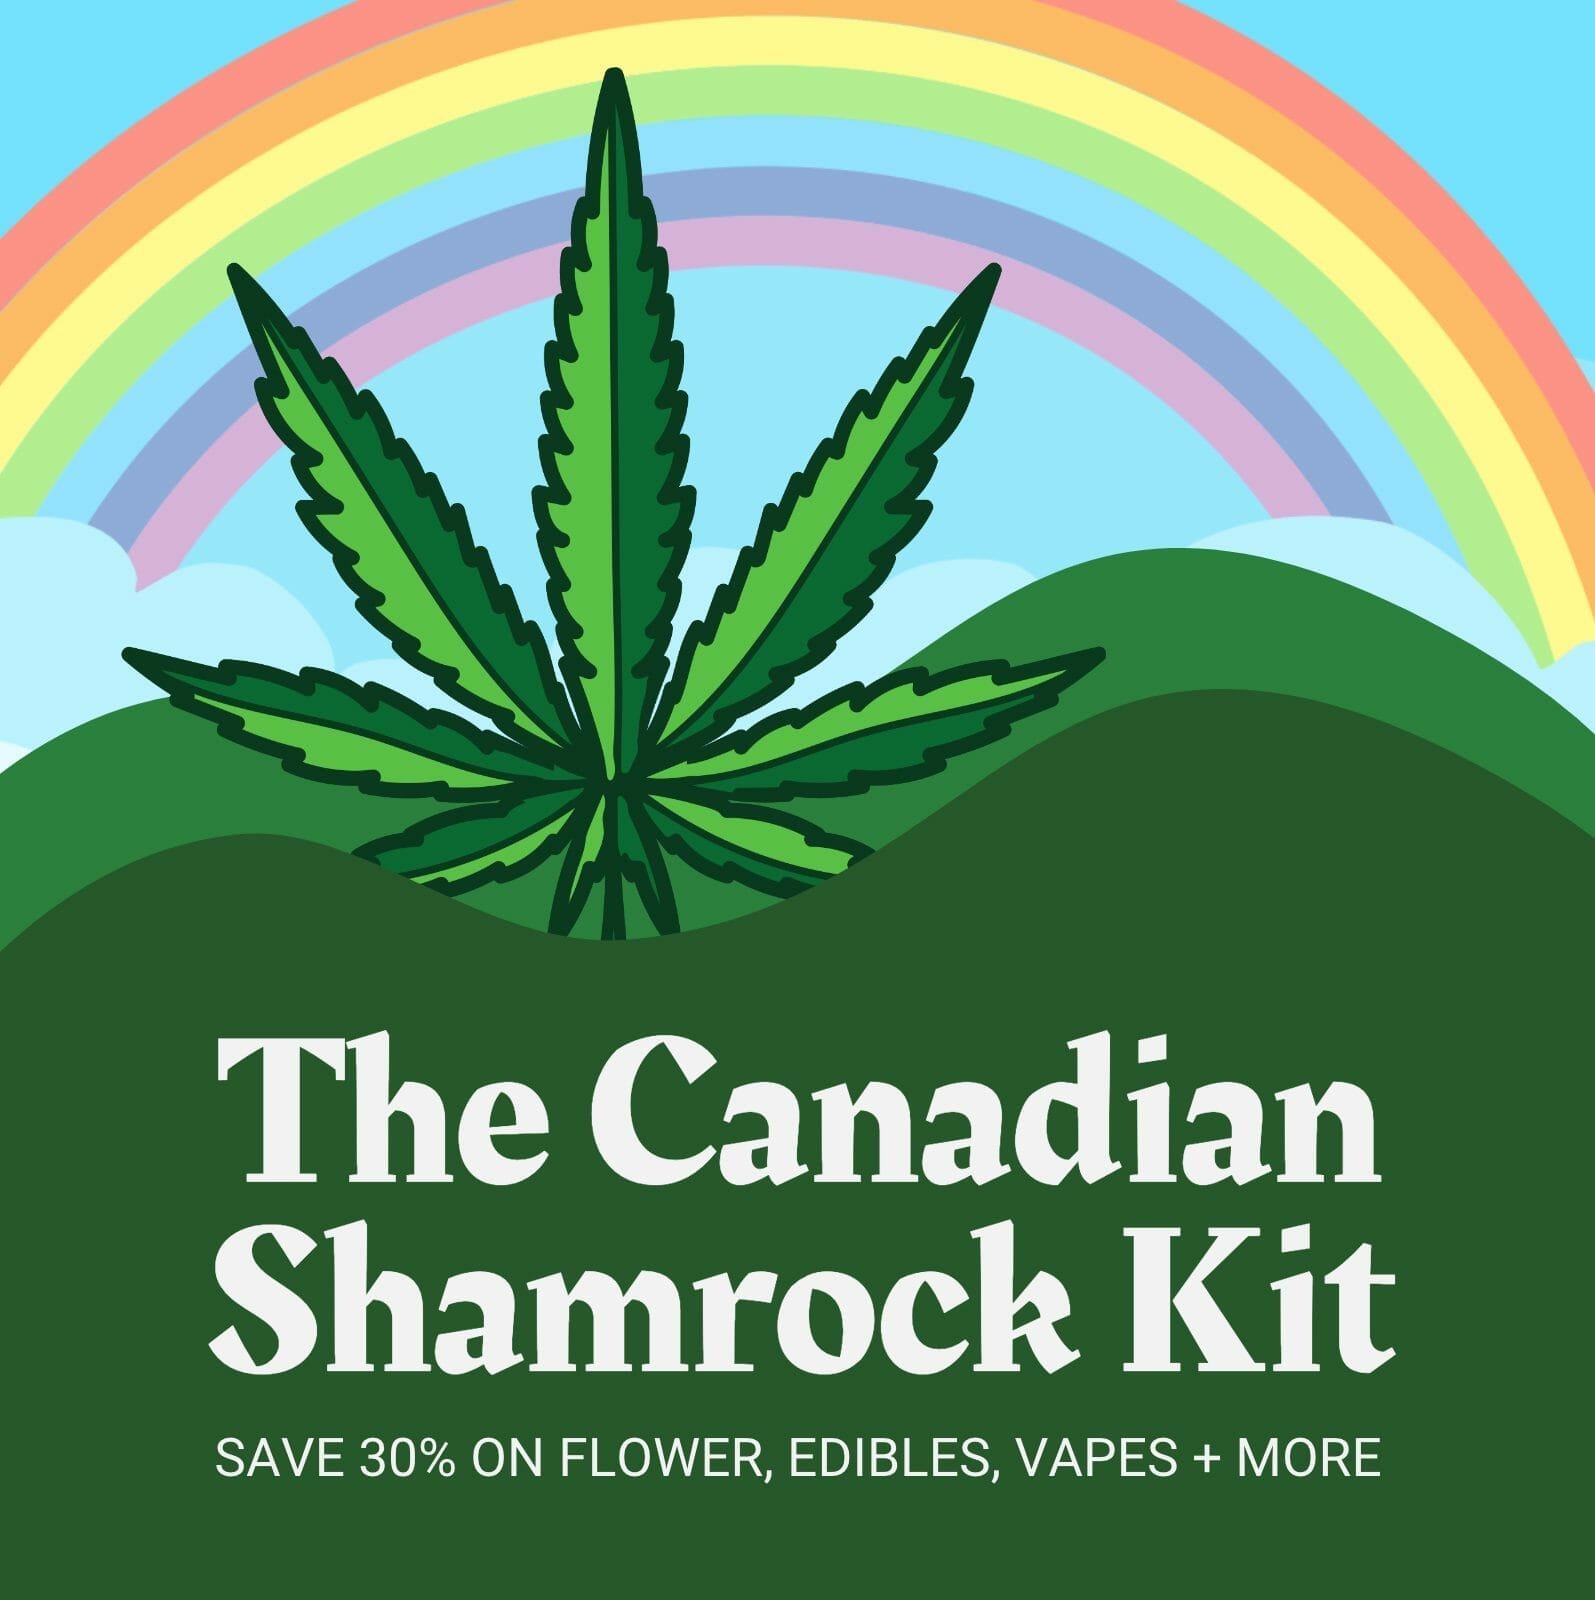 The Canadian Shamrock Kit